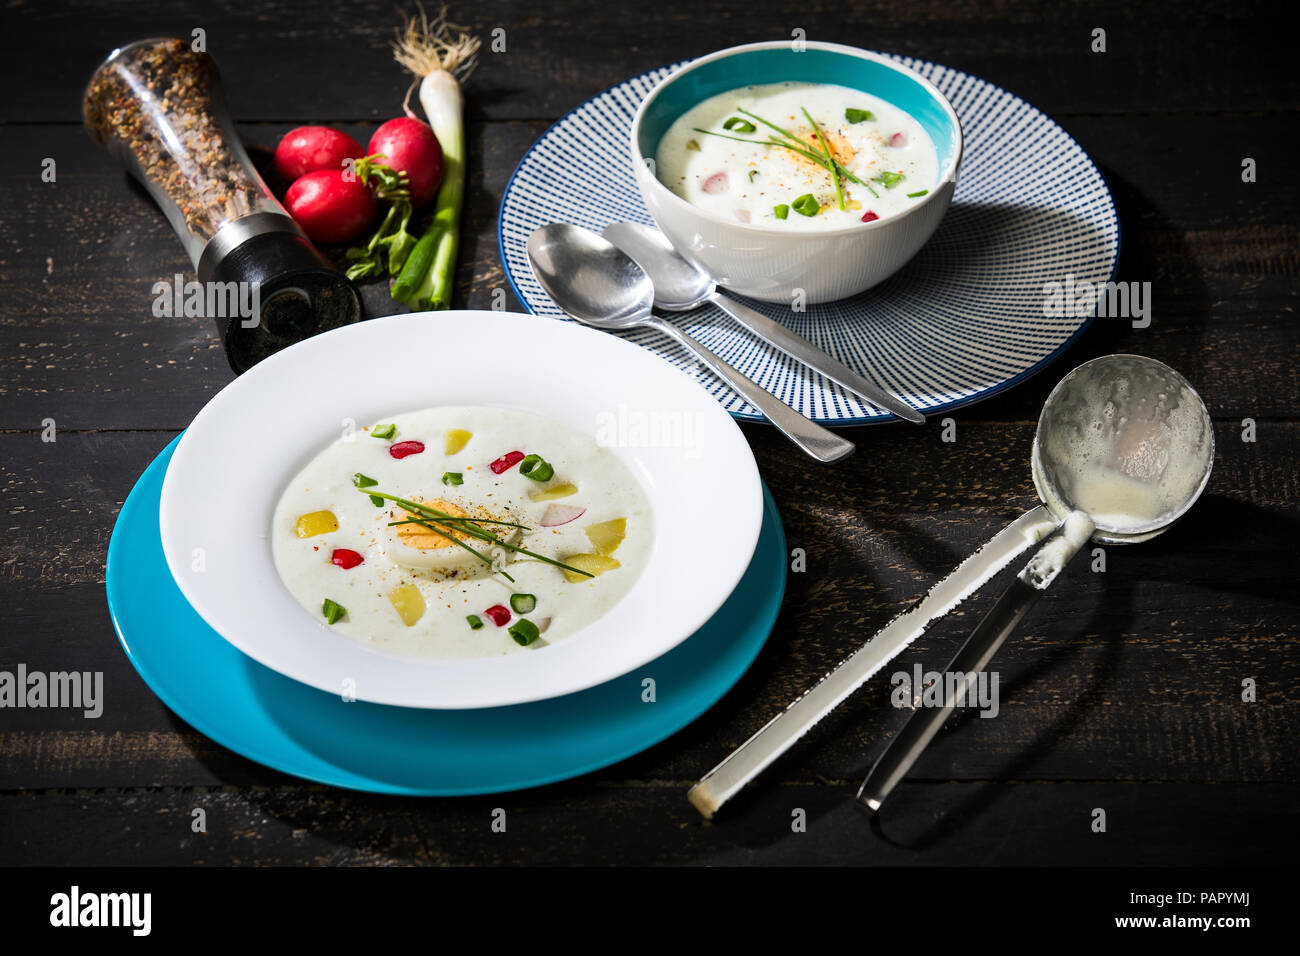 Soupe froide, le babeurre crème aigre soupe de pommes de terre avec des oeufs, radis, oignon de printemps Banque D'Images